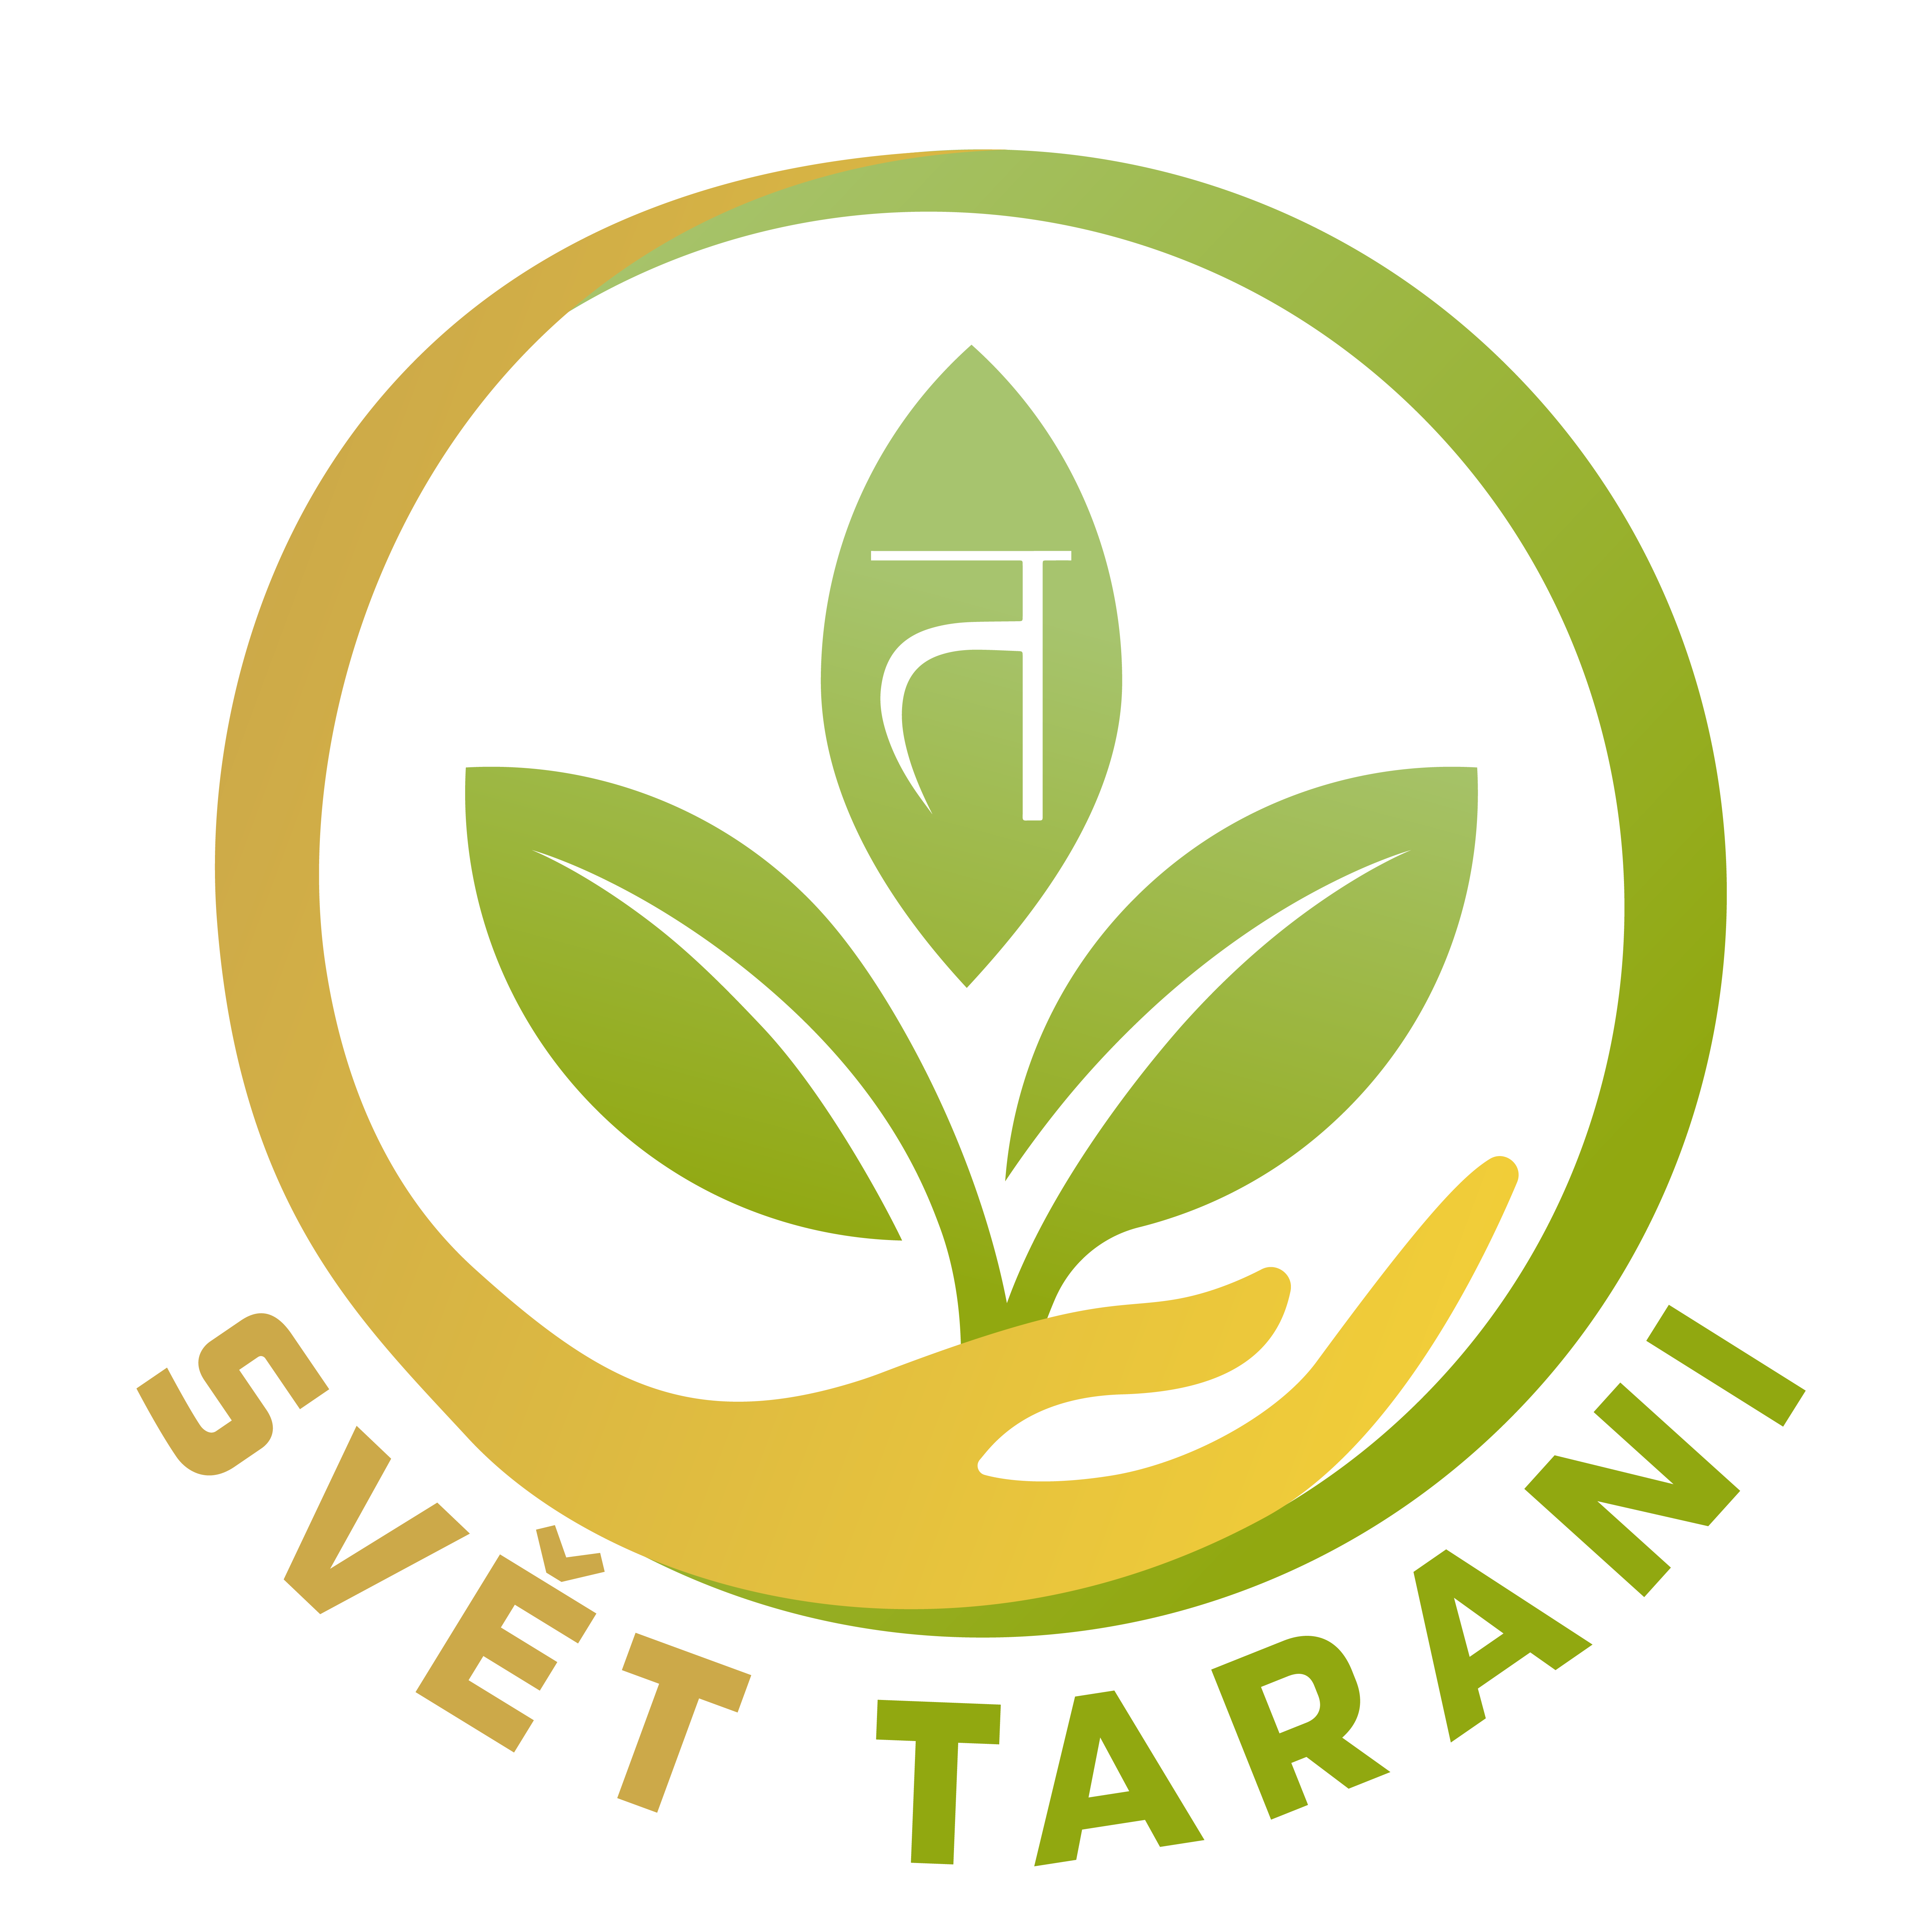 Svet_Tarani_logo_1-01